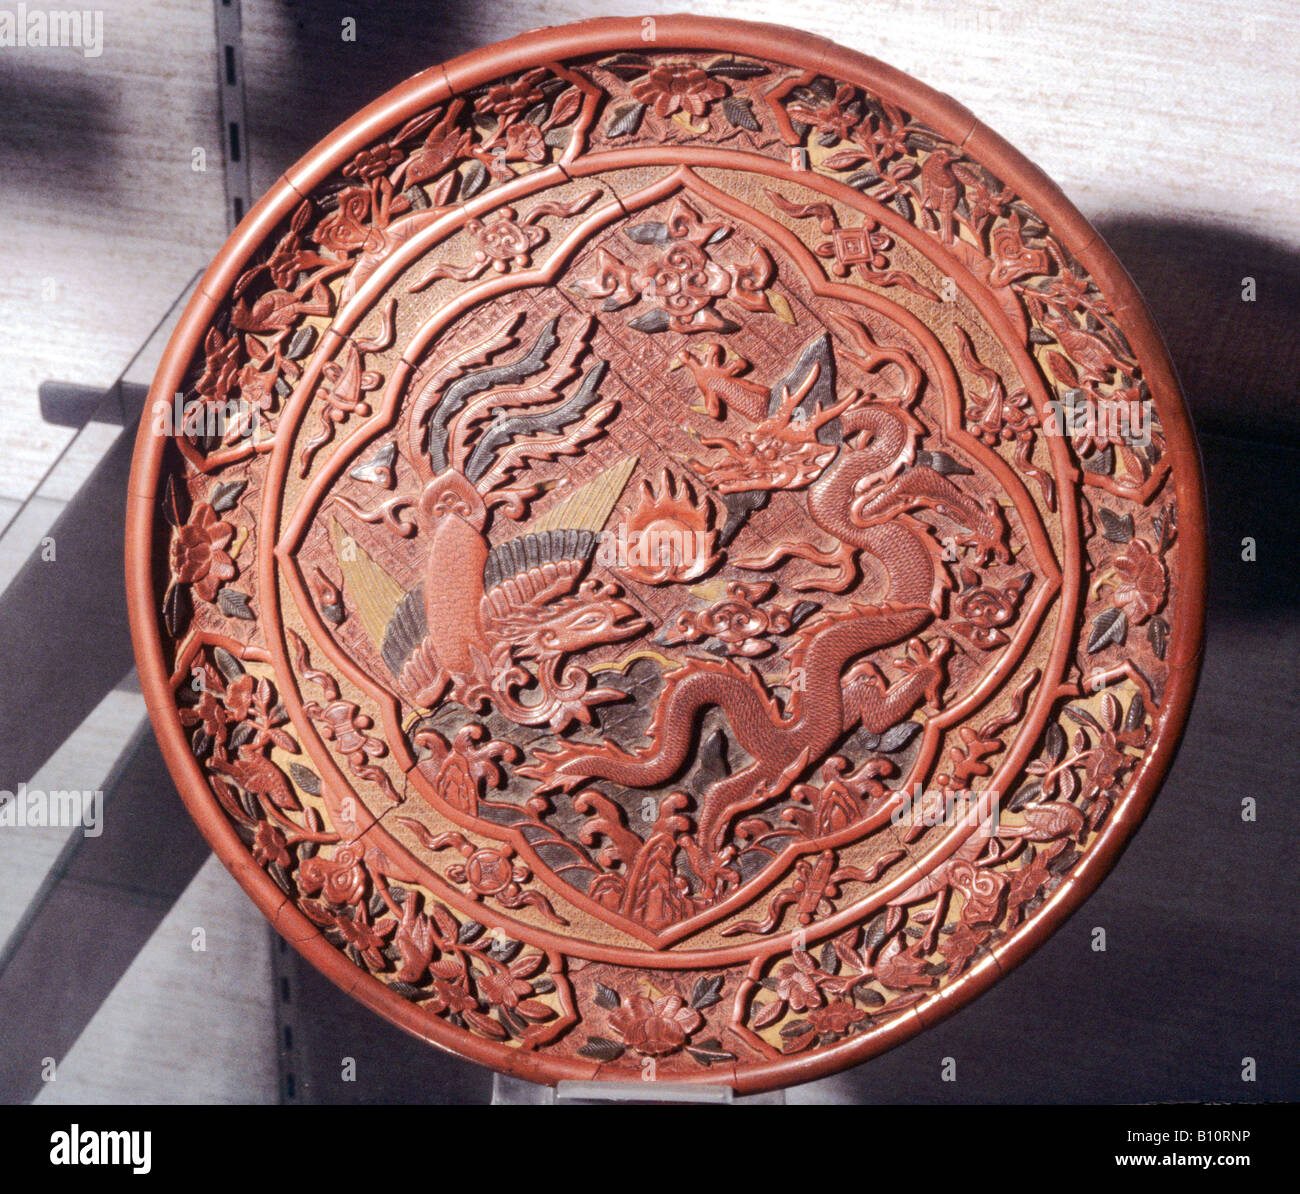 Piatto laccato. Drago Cinese,Phoenix e motivi floreali. La dinastia Ming del XV secolo. Cina Foto Stock